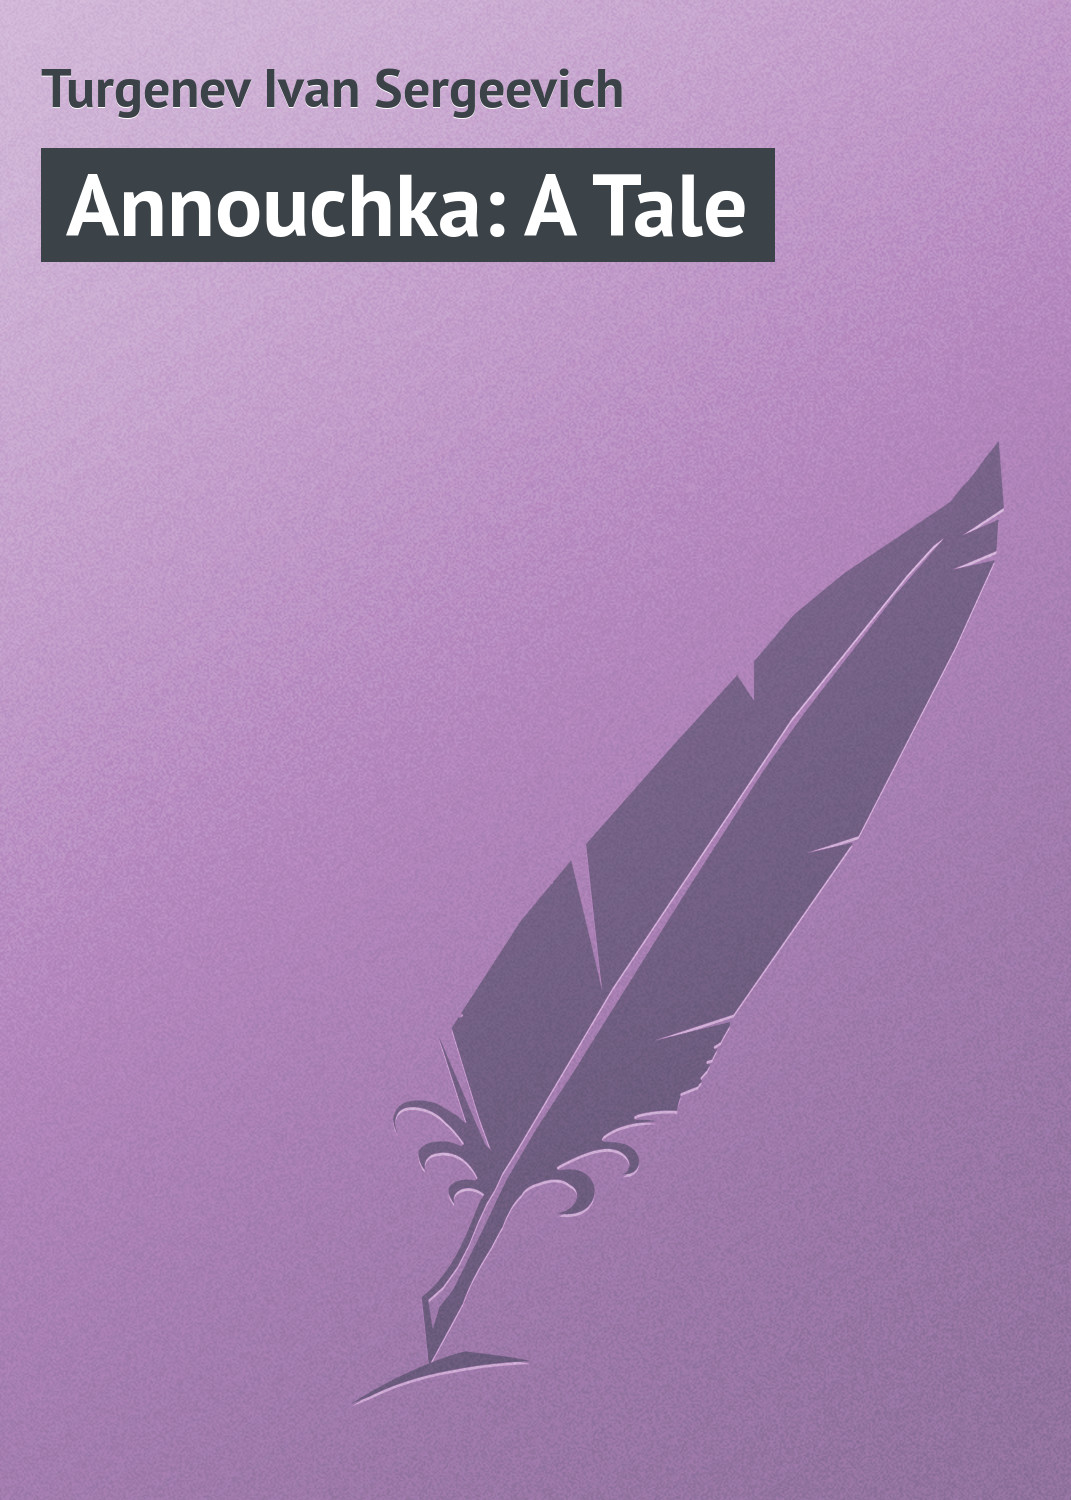 Книга Annouchka: A Tale из серии , созданная Turgenev Ivan, может относится к жанру Русская классика. Стоимость электронной книги Annouchka: A Tale с идентификатором 23164659 составляет 5.99 руб.